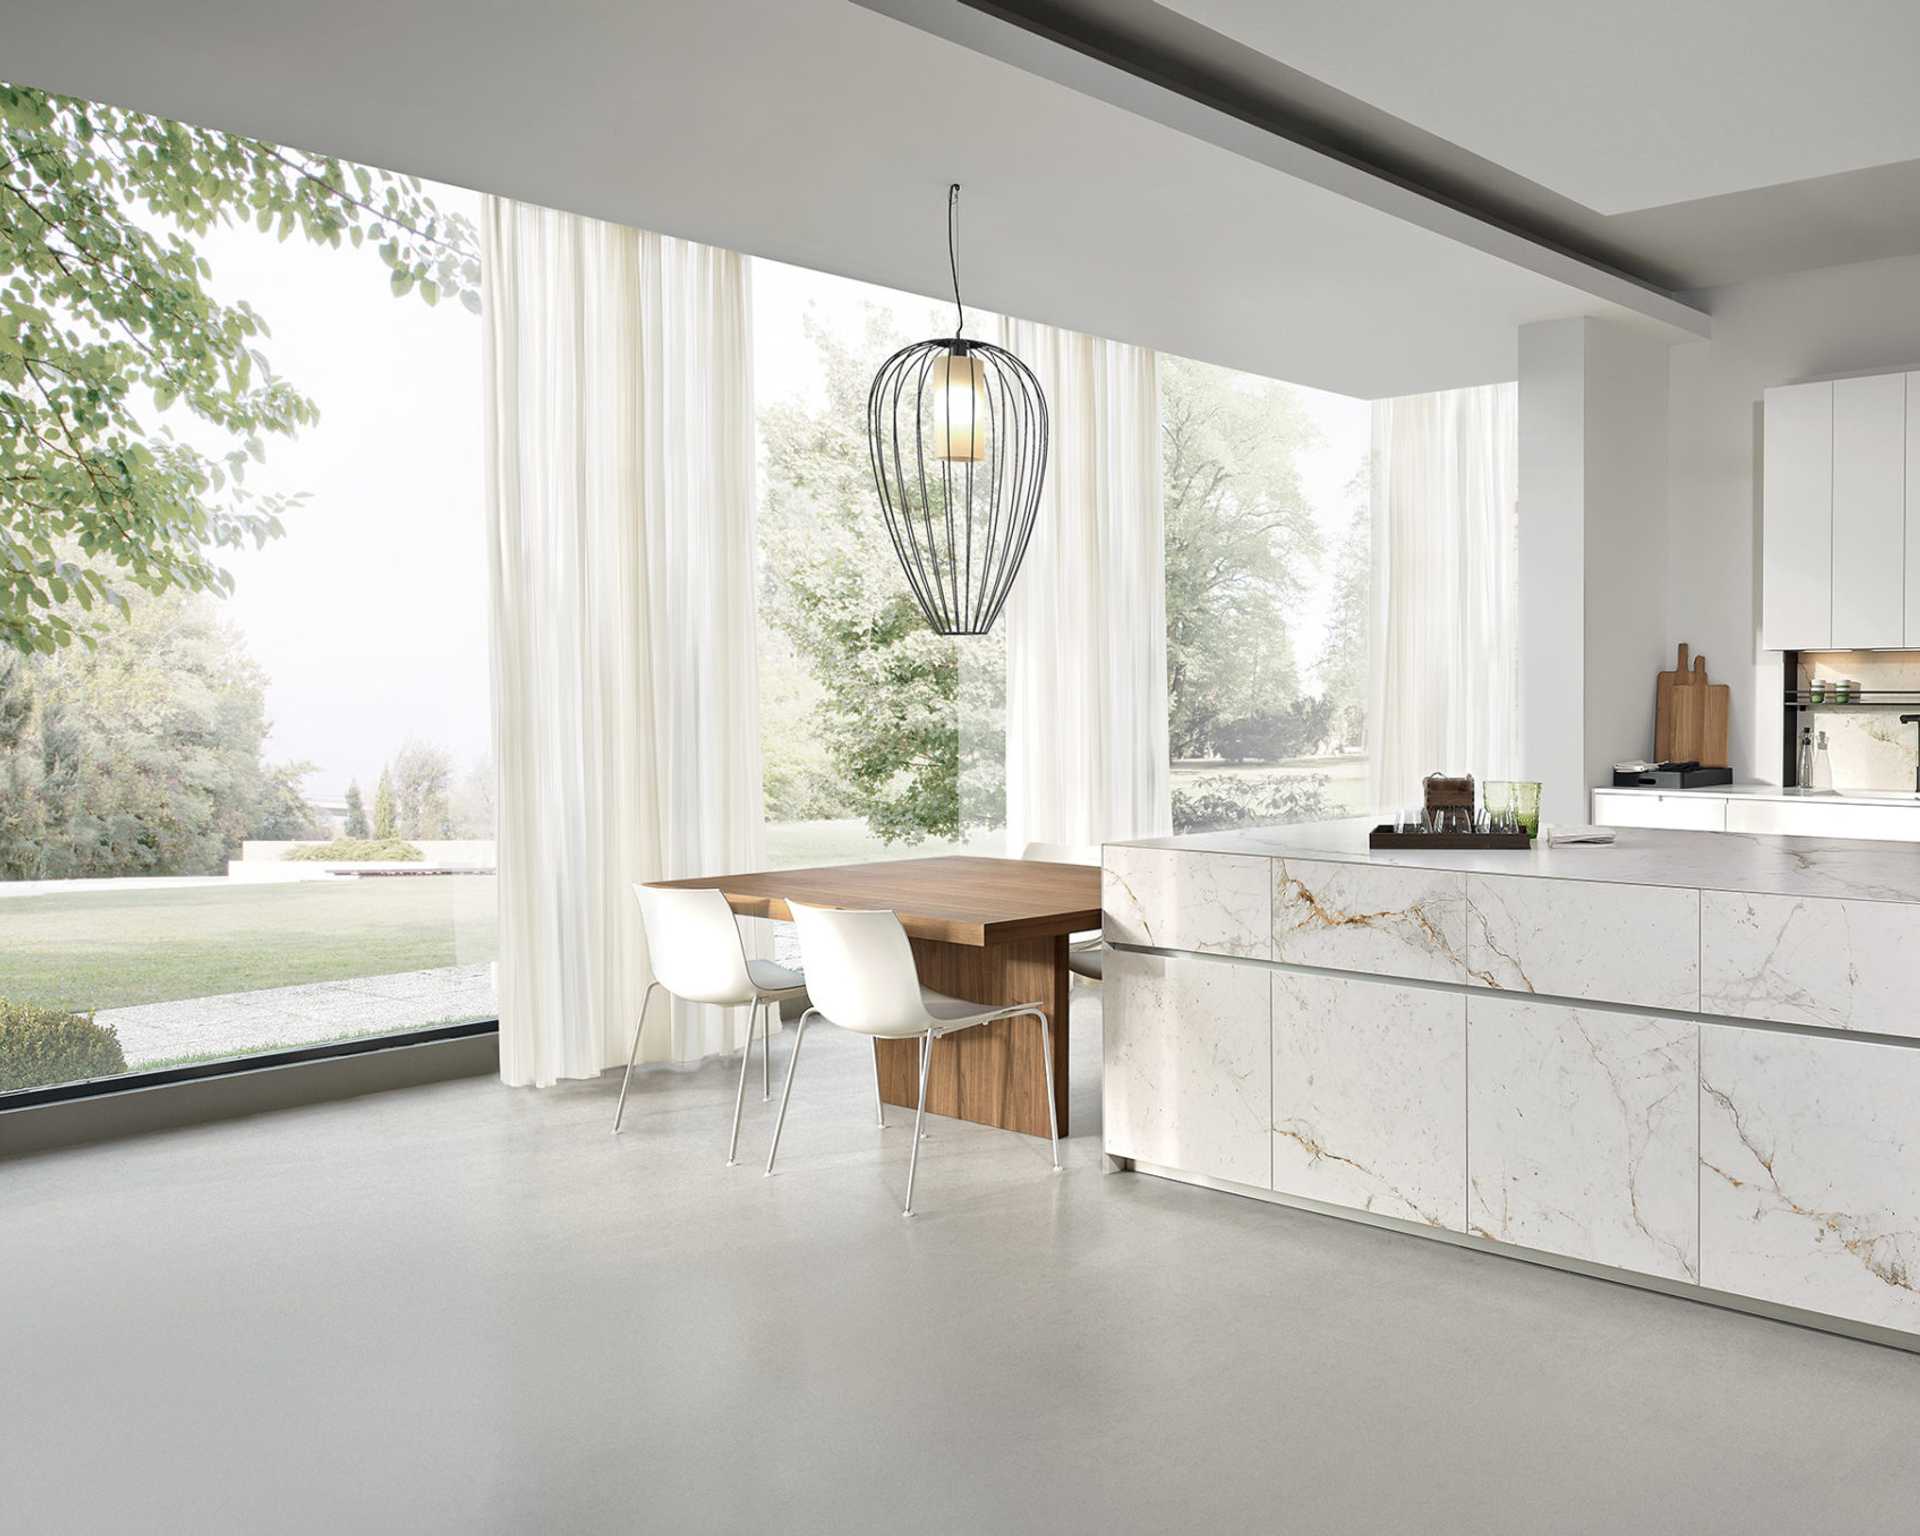 NOLI-european-style-kitchen-white